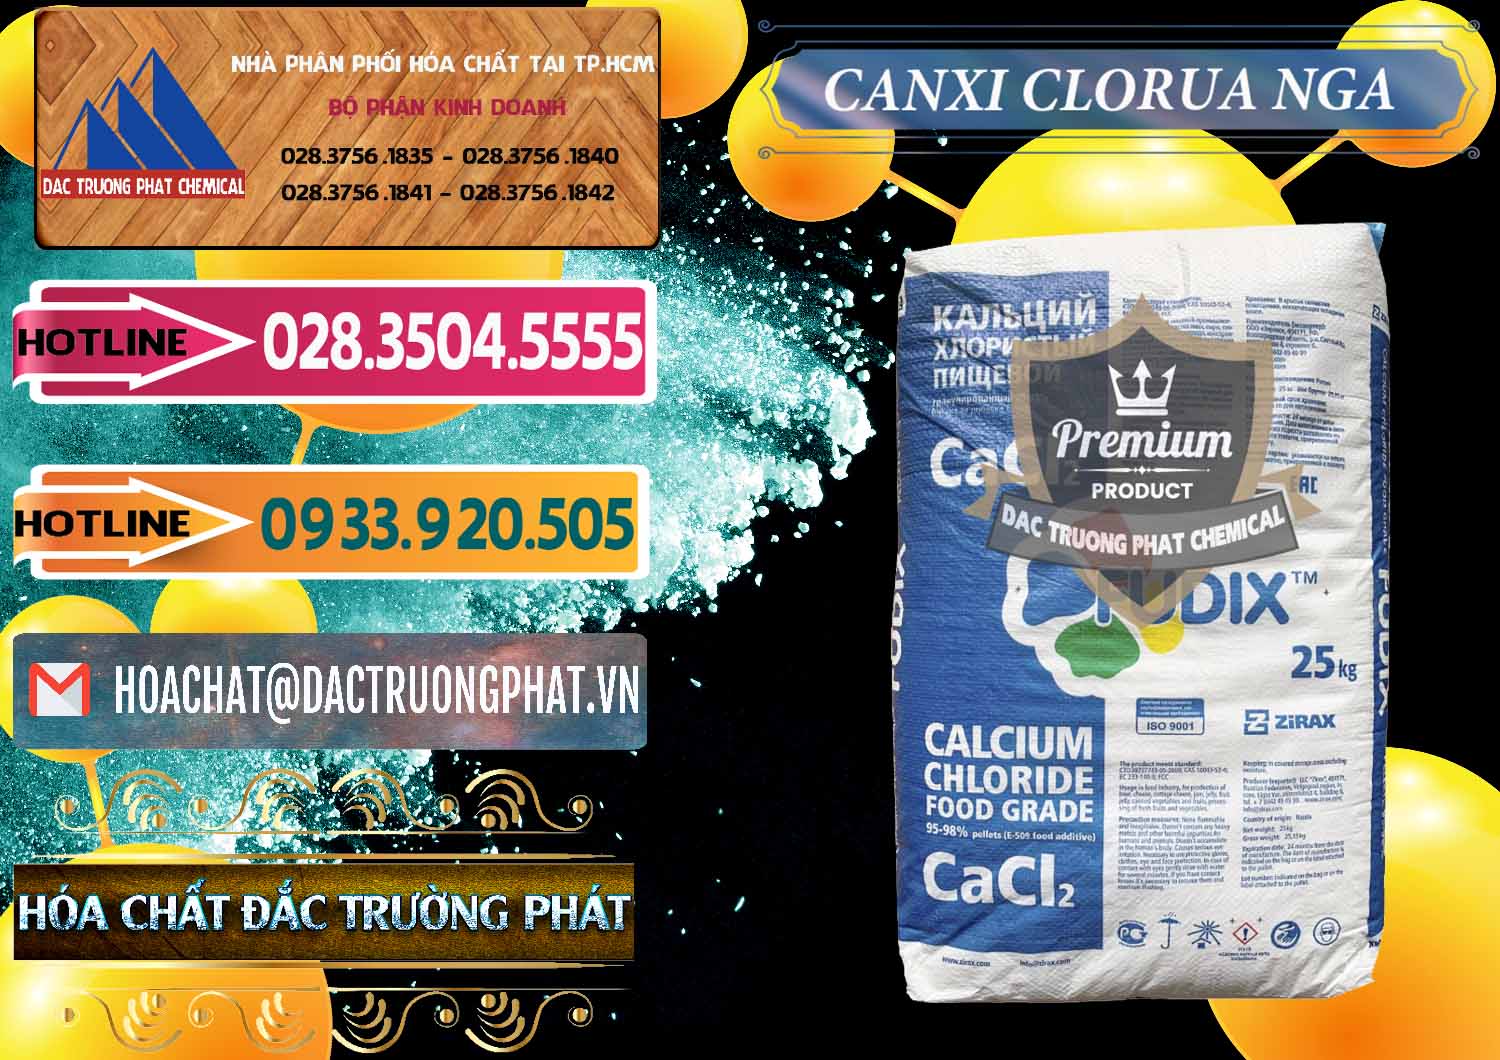 Nơi bán & cung ứng CaCl2 – Canxi Clorua Nga Russia - 0430 - Đơn vị cung cấp - kinh doanh hóa chất tại TP.HCM - dactruongphat.vn